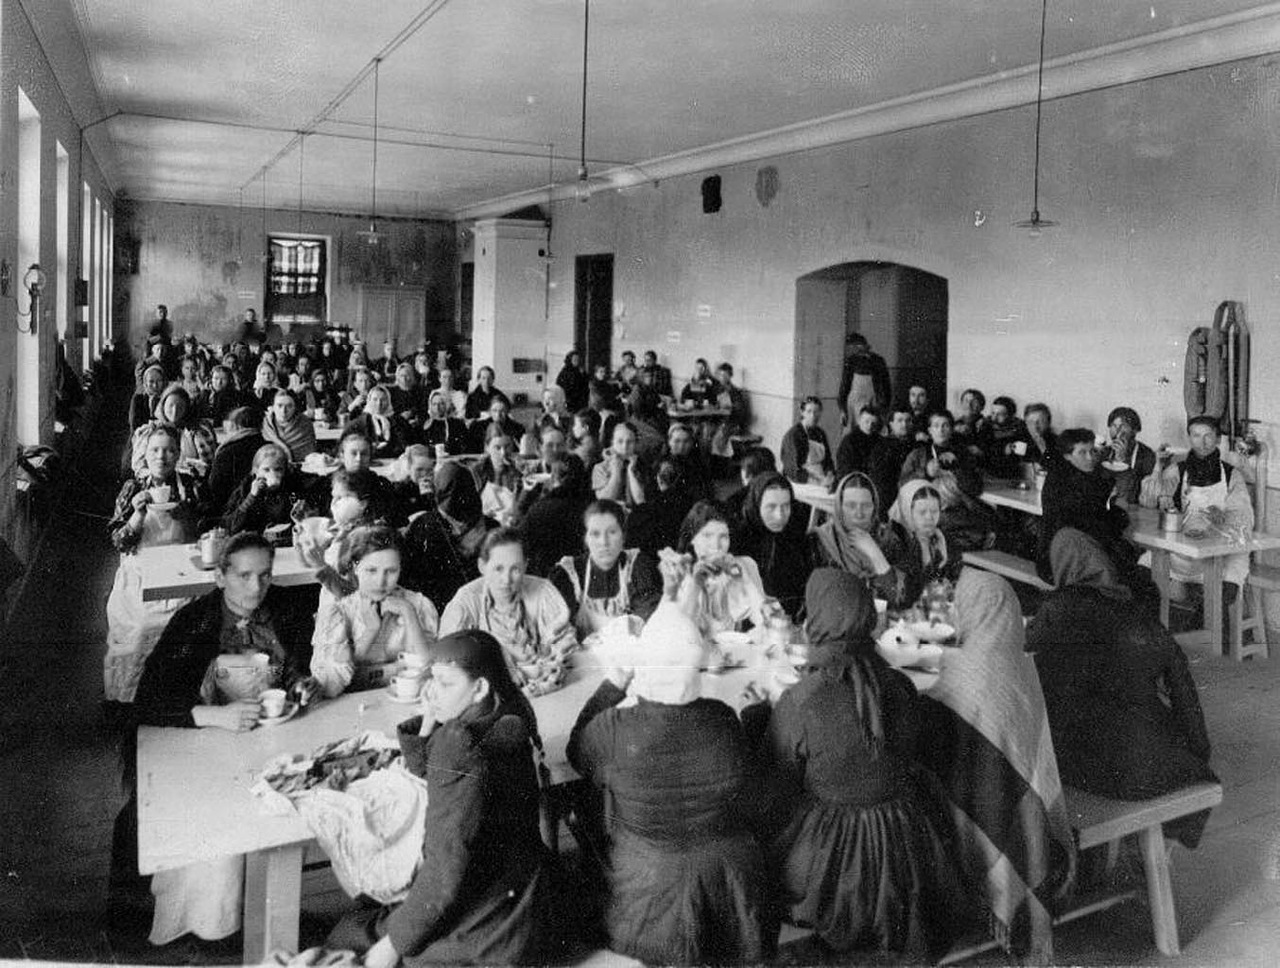 Mittagessen in der Speisehalle. In seinen besten Zeiten beschäftigte Keller & Co bis zu 380 Menschen.